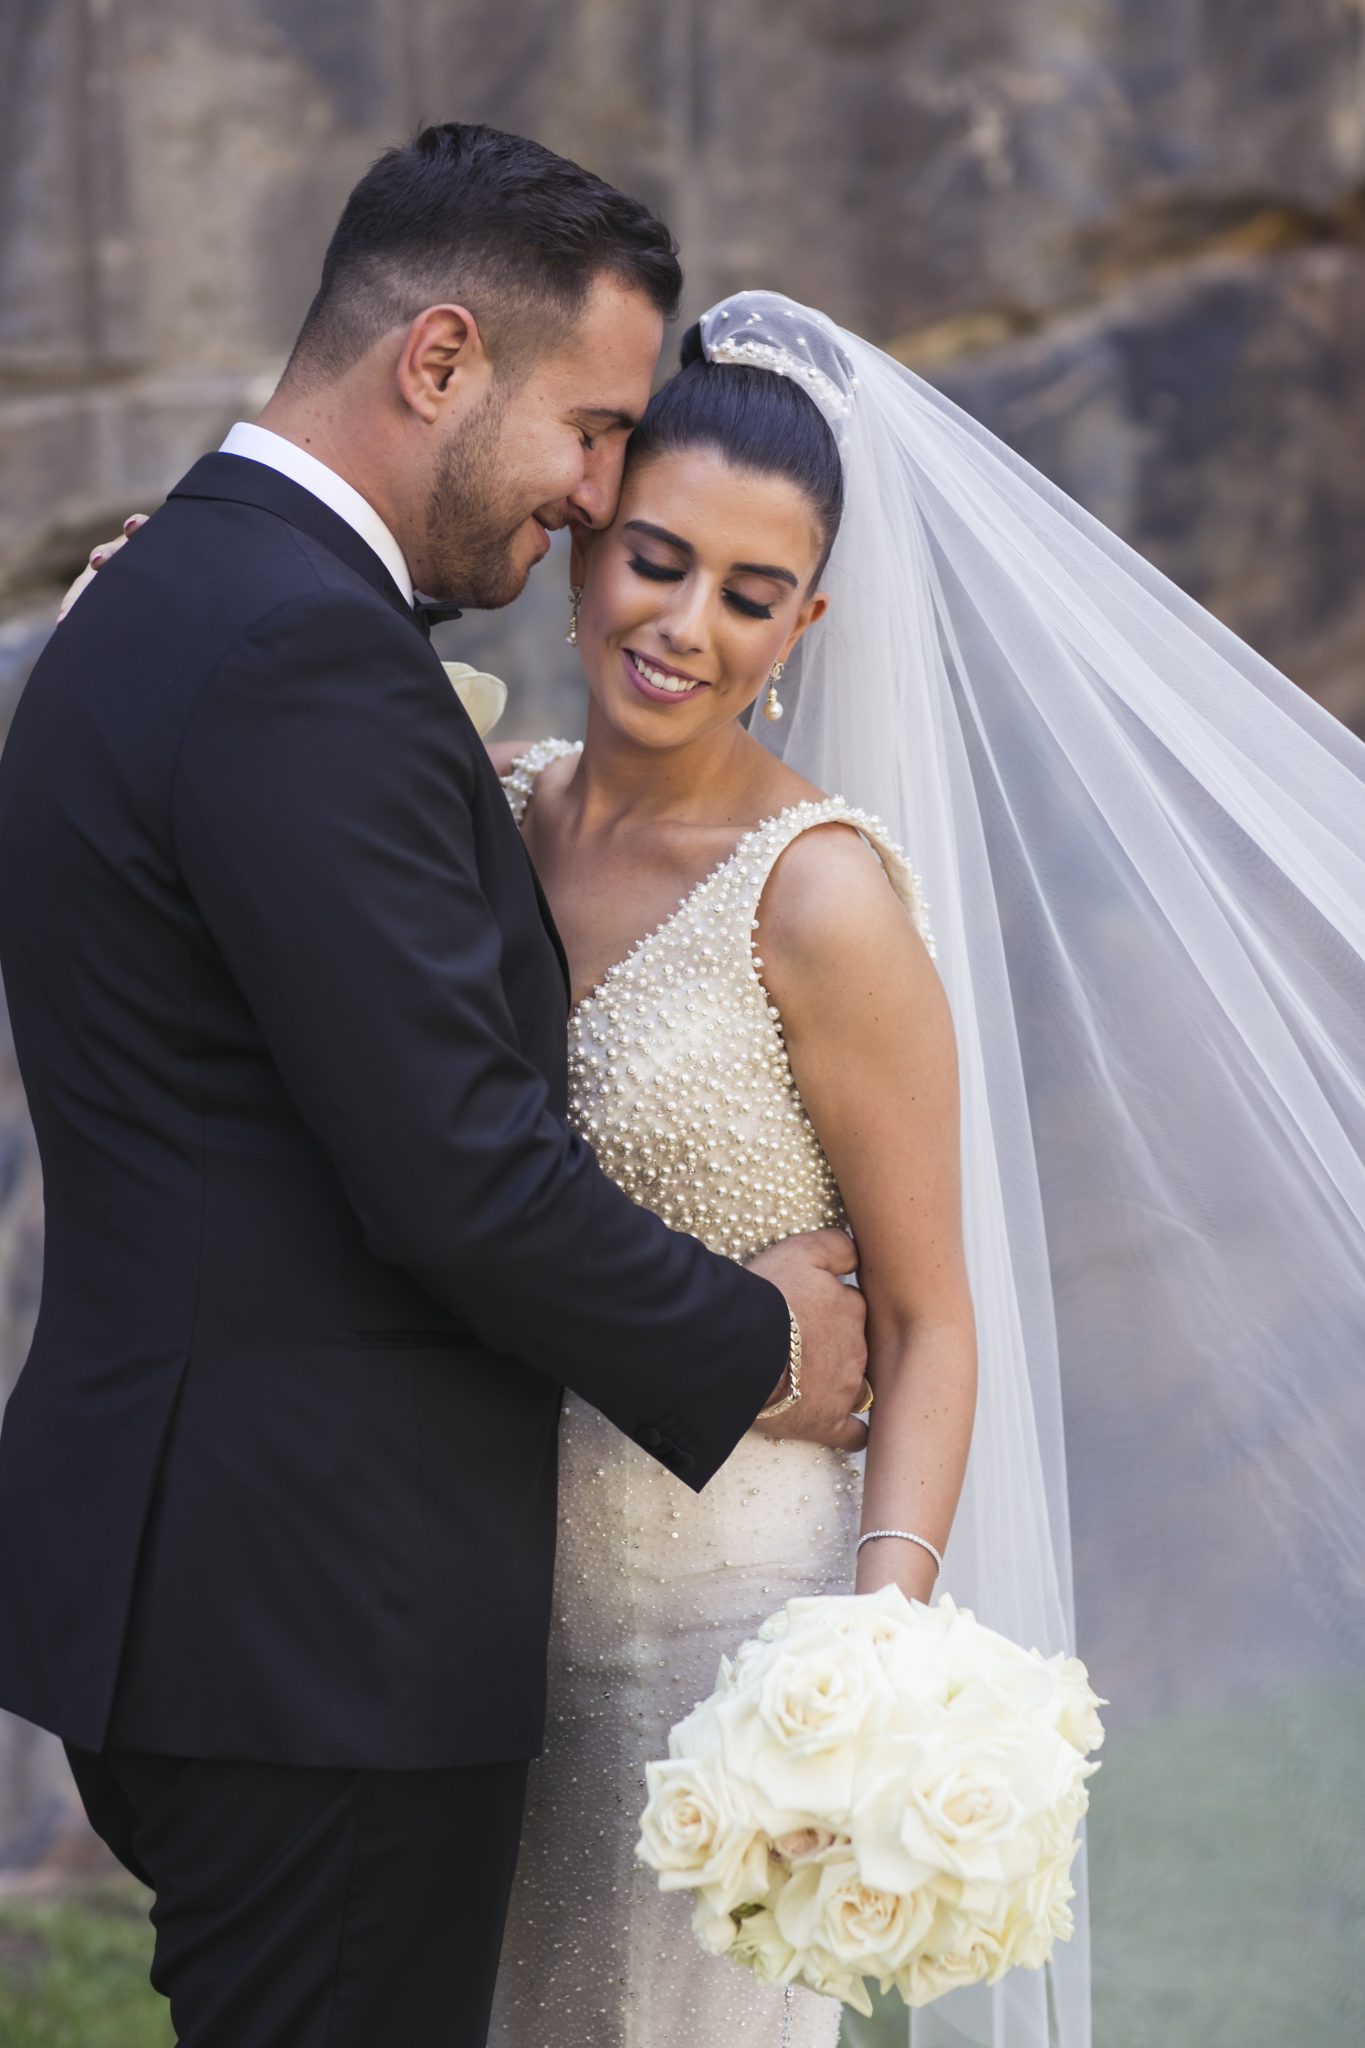 A Classic Italian Wedding | Wedded Wonderland